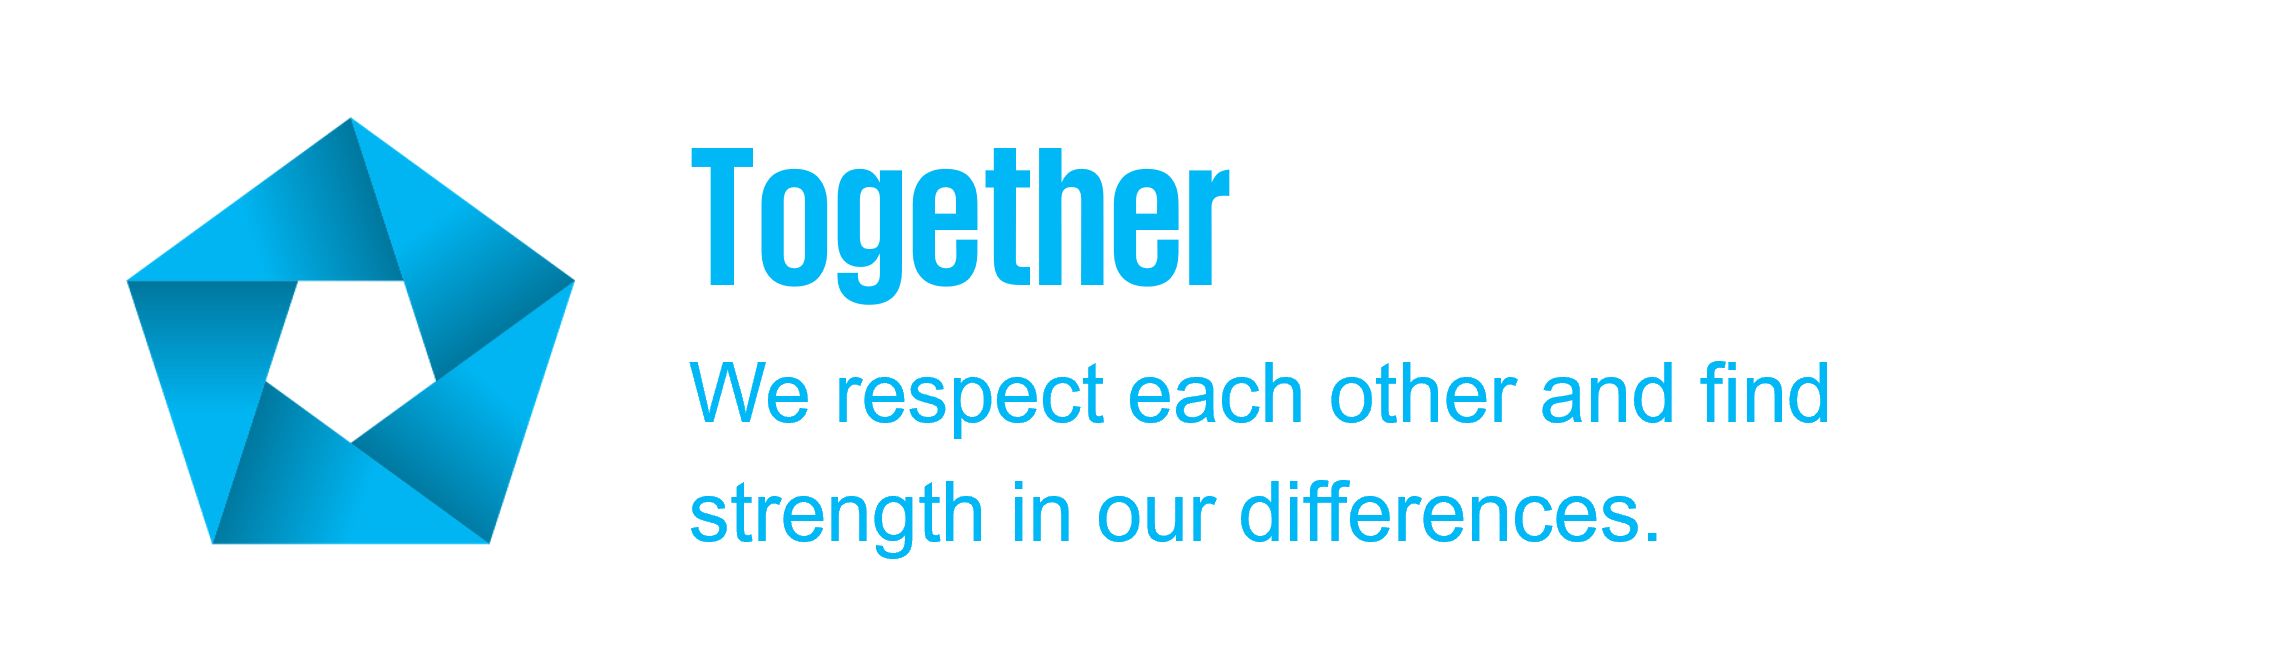 Together: 我們尊重彼此，並從彼此的差異汲取力量